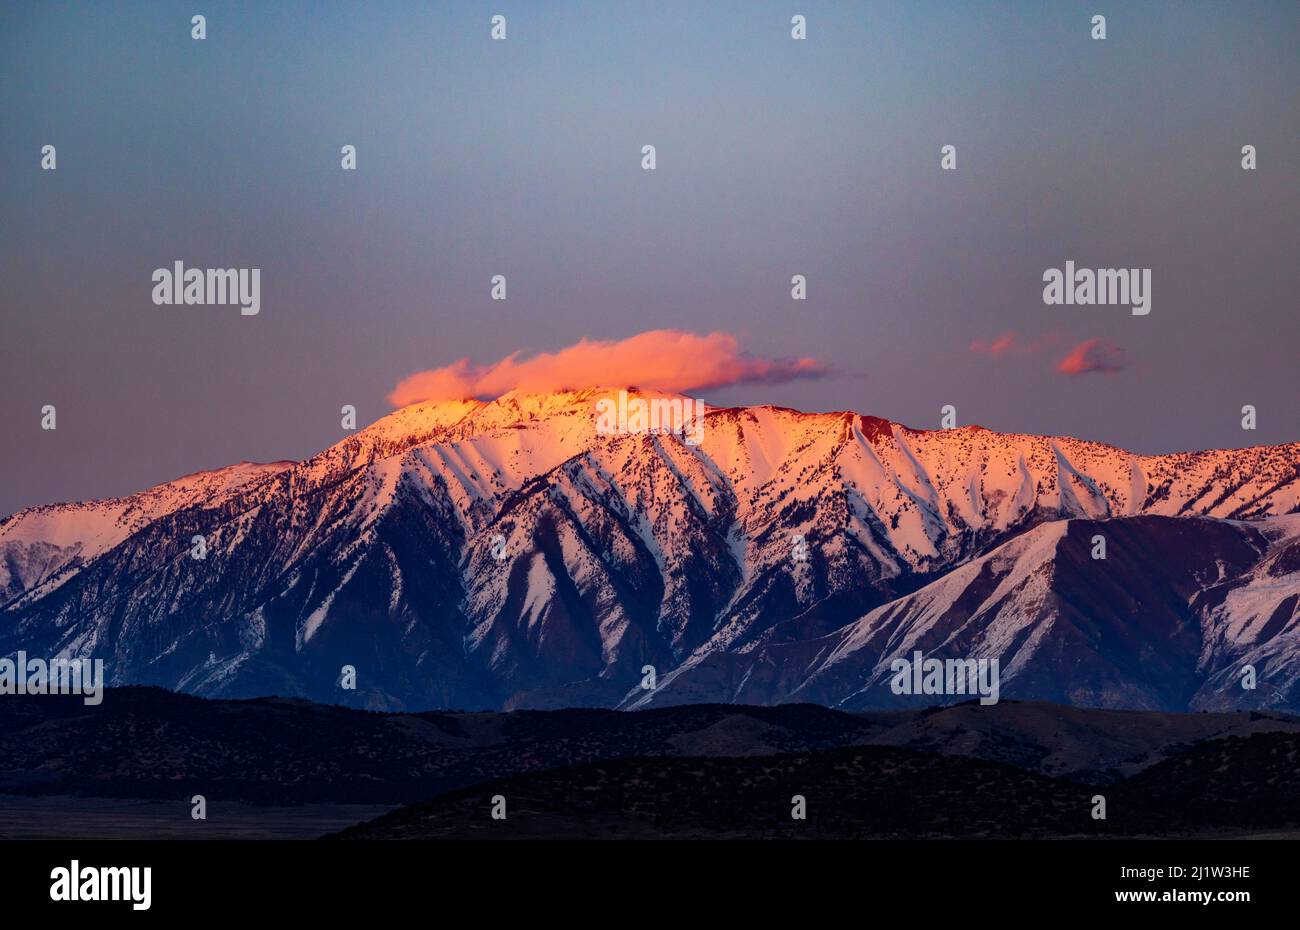 La lumière rose du soleil couchant éclaire un nuage sur les trois sommets enneigés du mont Nebo près de Nephi, Utah, États-Unis, comme vu de l'ouest. Montage Banque D'Images